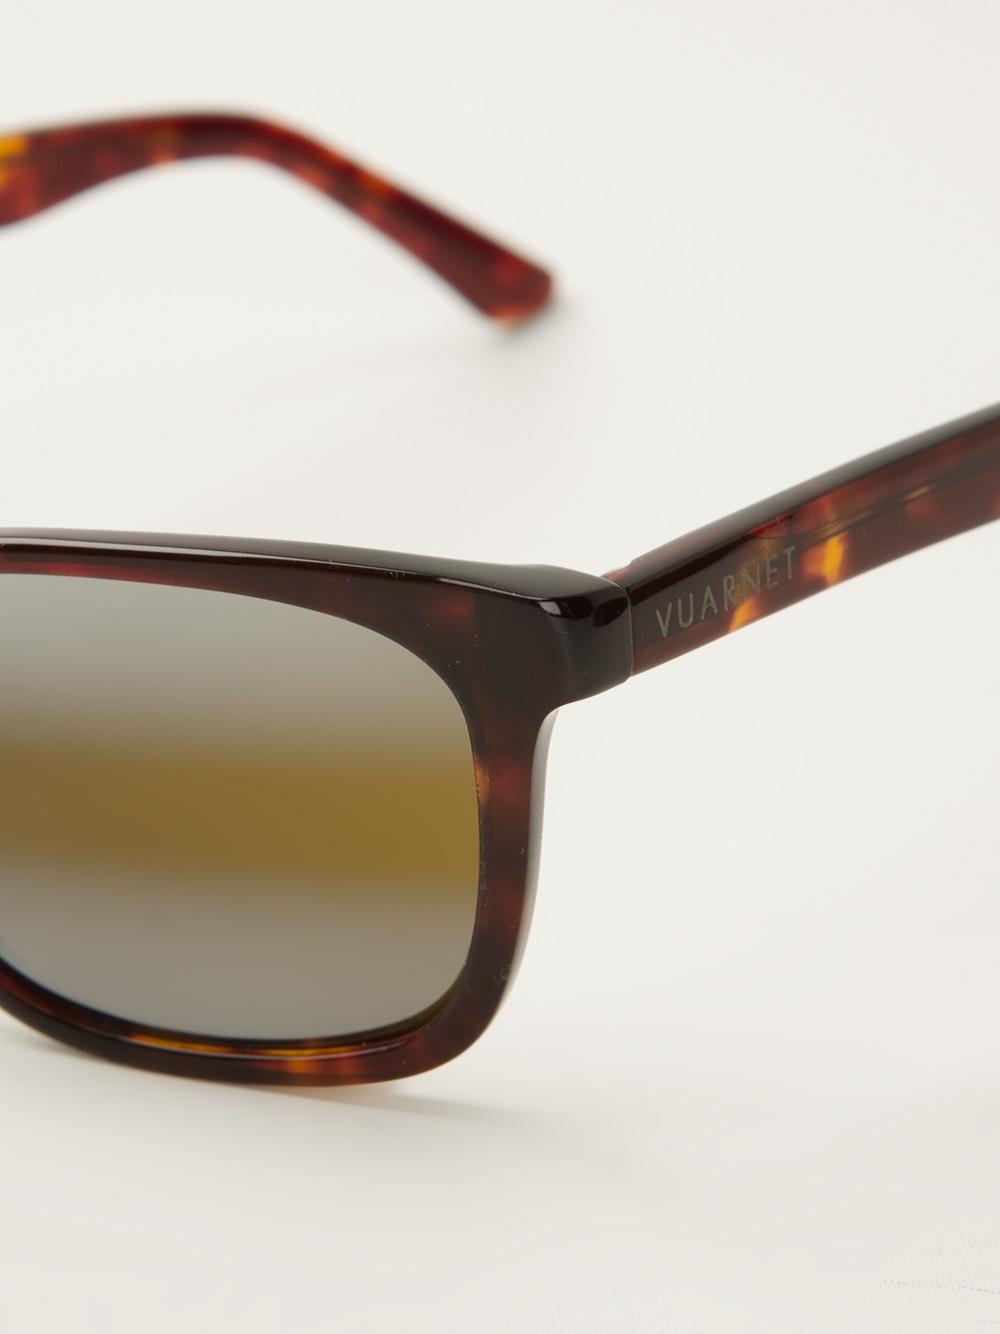 Vuarnet Tortoise Shell Sunglasses in Brown for Men - Lyst